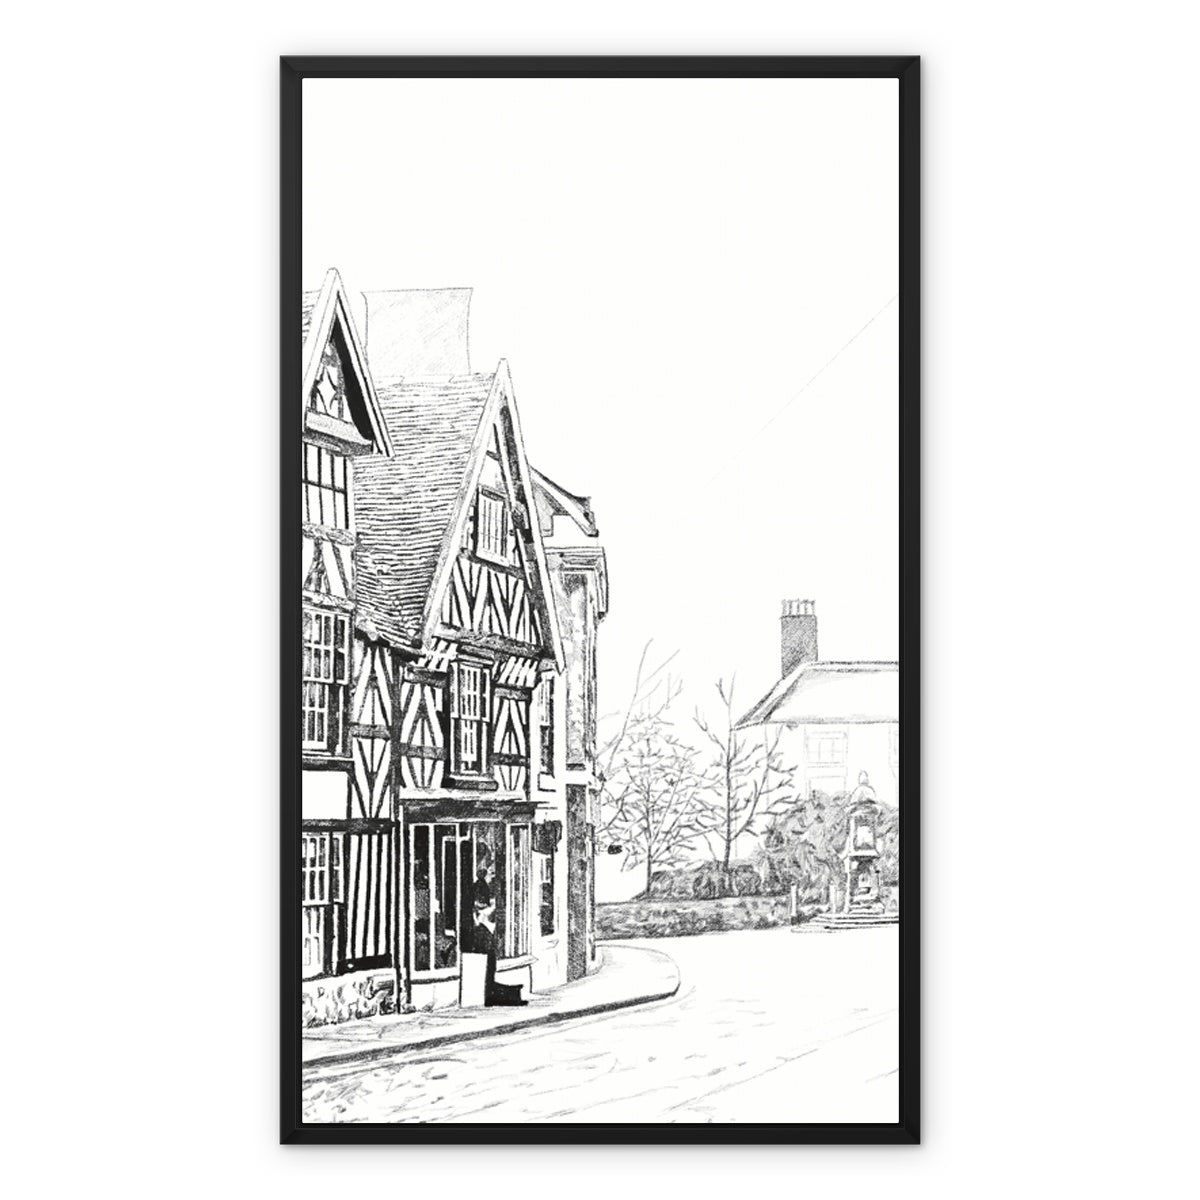 The Tudor House, Cheadle Framed Canvas